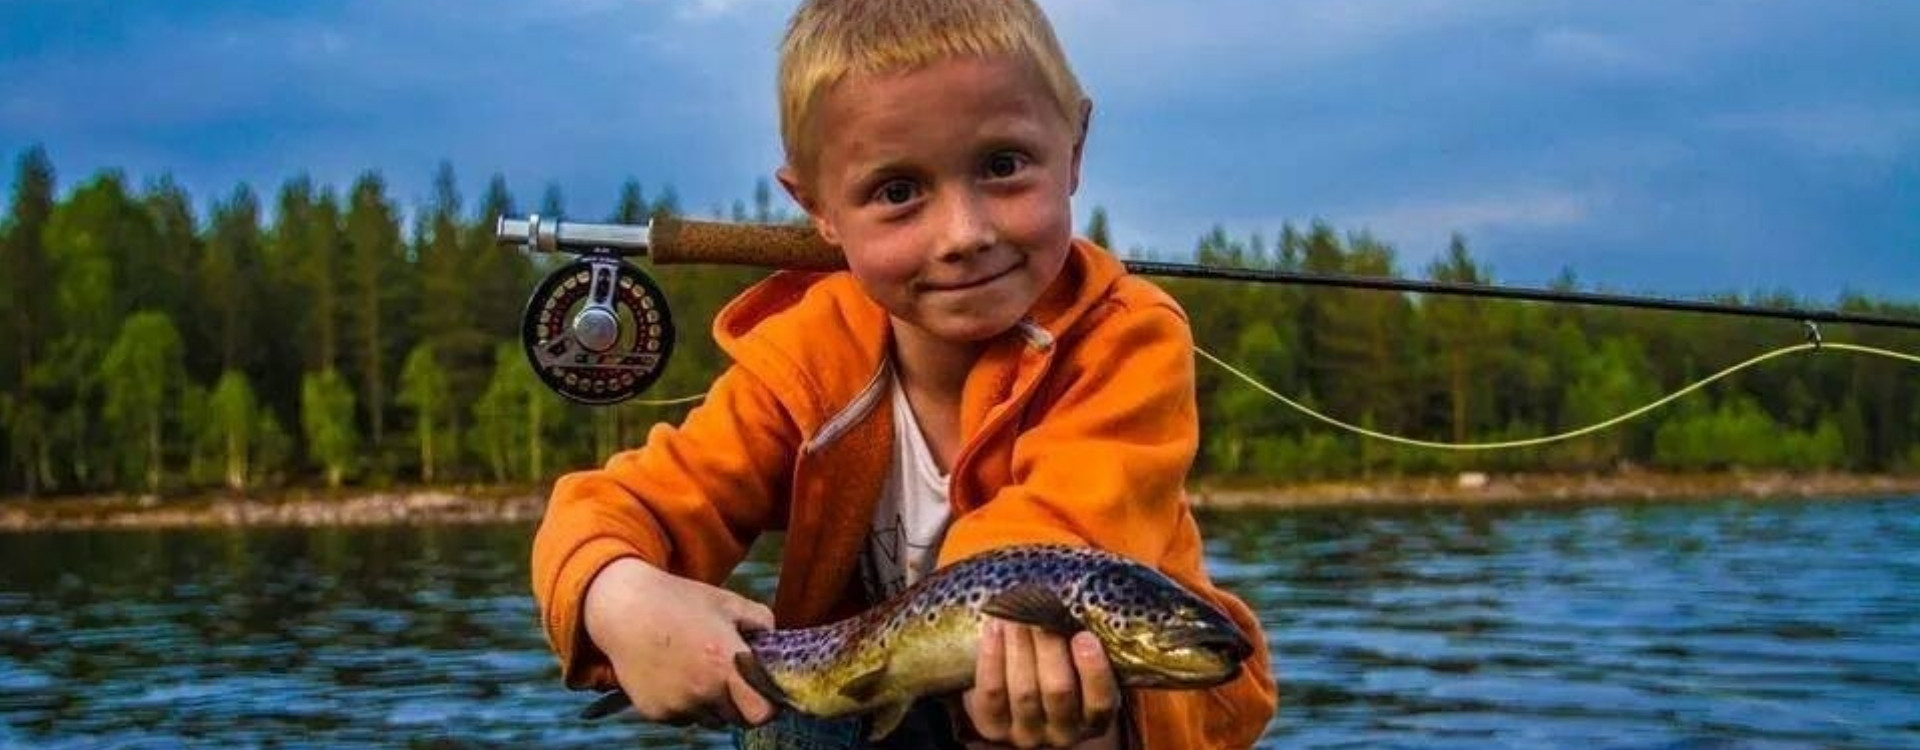 Братья ловят рыбу. Мальчик с рыбой. Дети ловят рыбу. Мальчик поймал рыбу. Рыбалка фото.